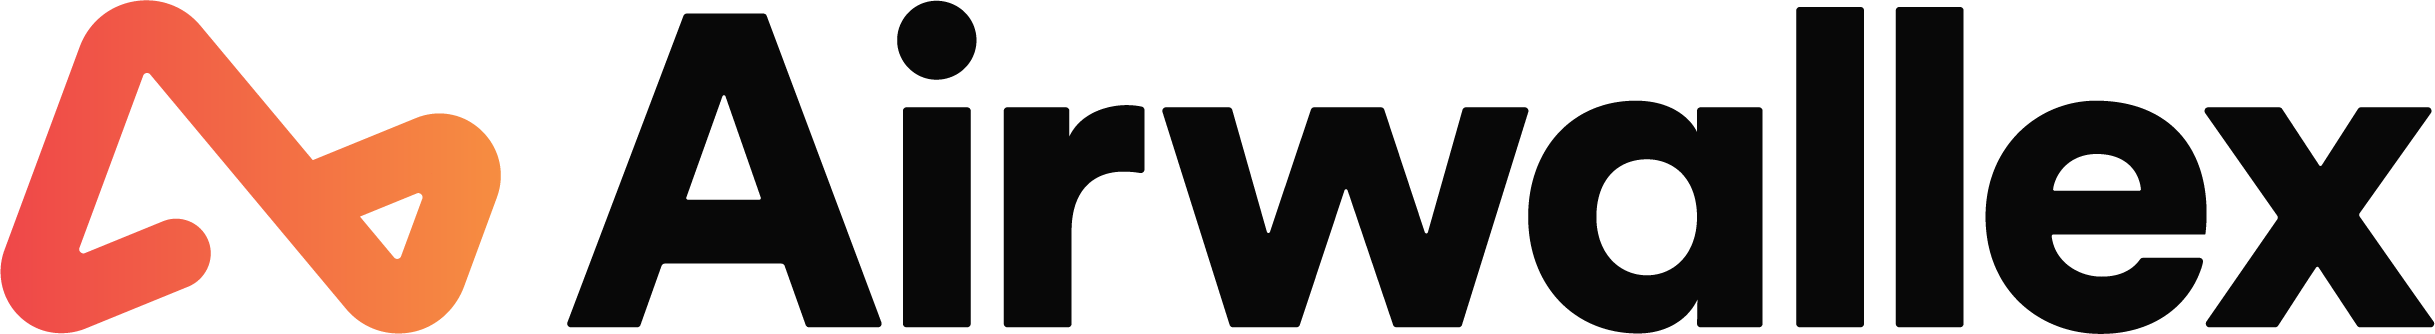 Airwallex logo.png